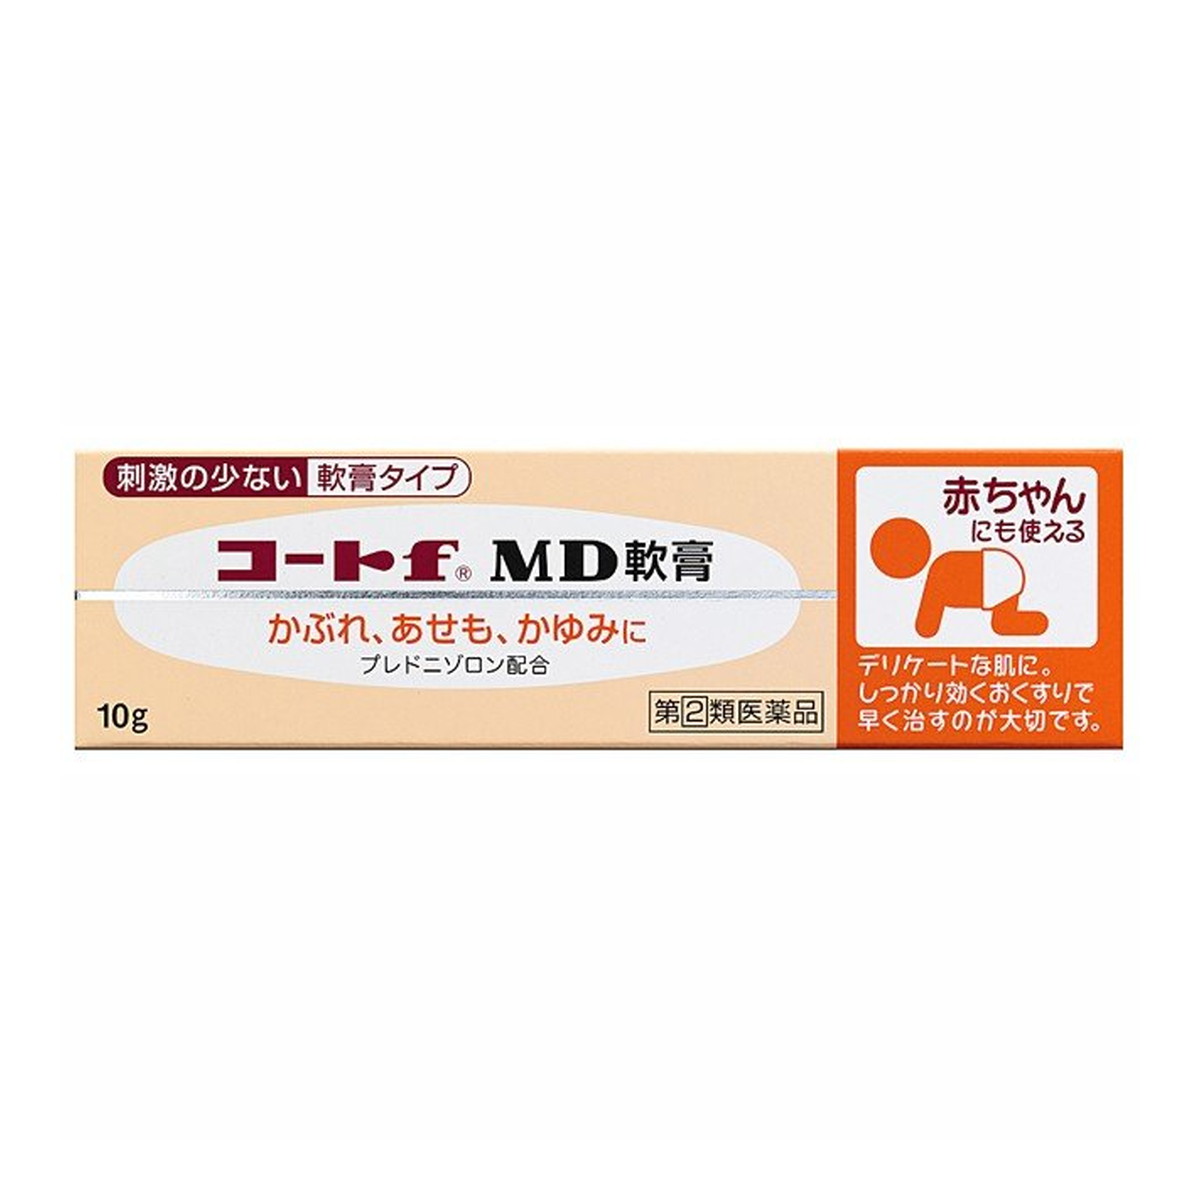 【第(2)類医薬品】 田辺三菱製薬 コートf MD軟膏 10g